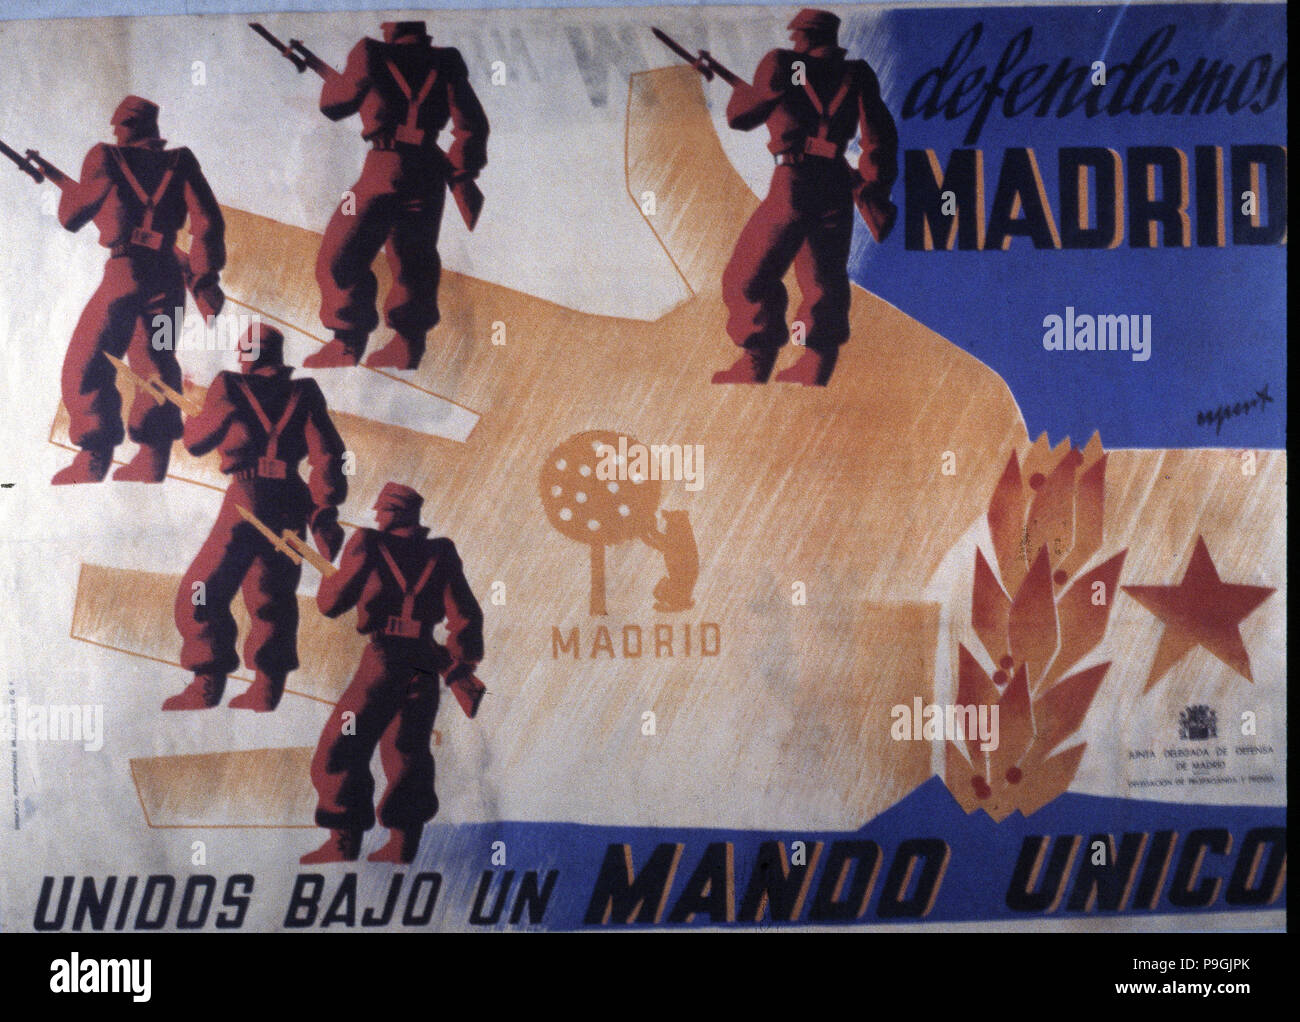 Guerre civile espagnole (1936 - 1939), affiche de propagande du gouvernement républicain encourageant le d… Banque D'Images